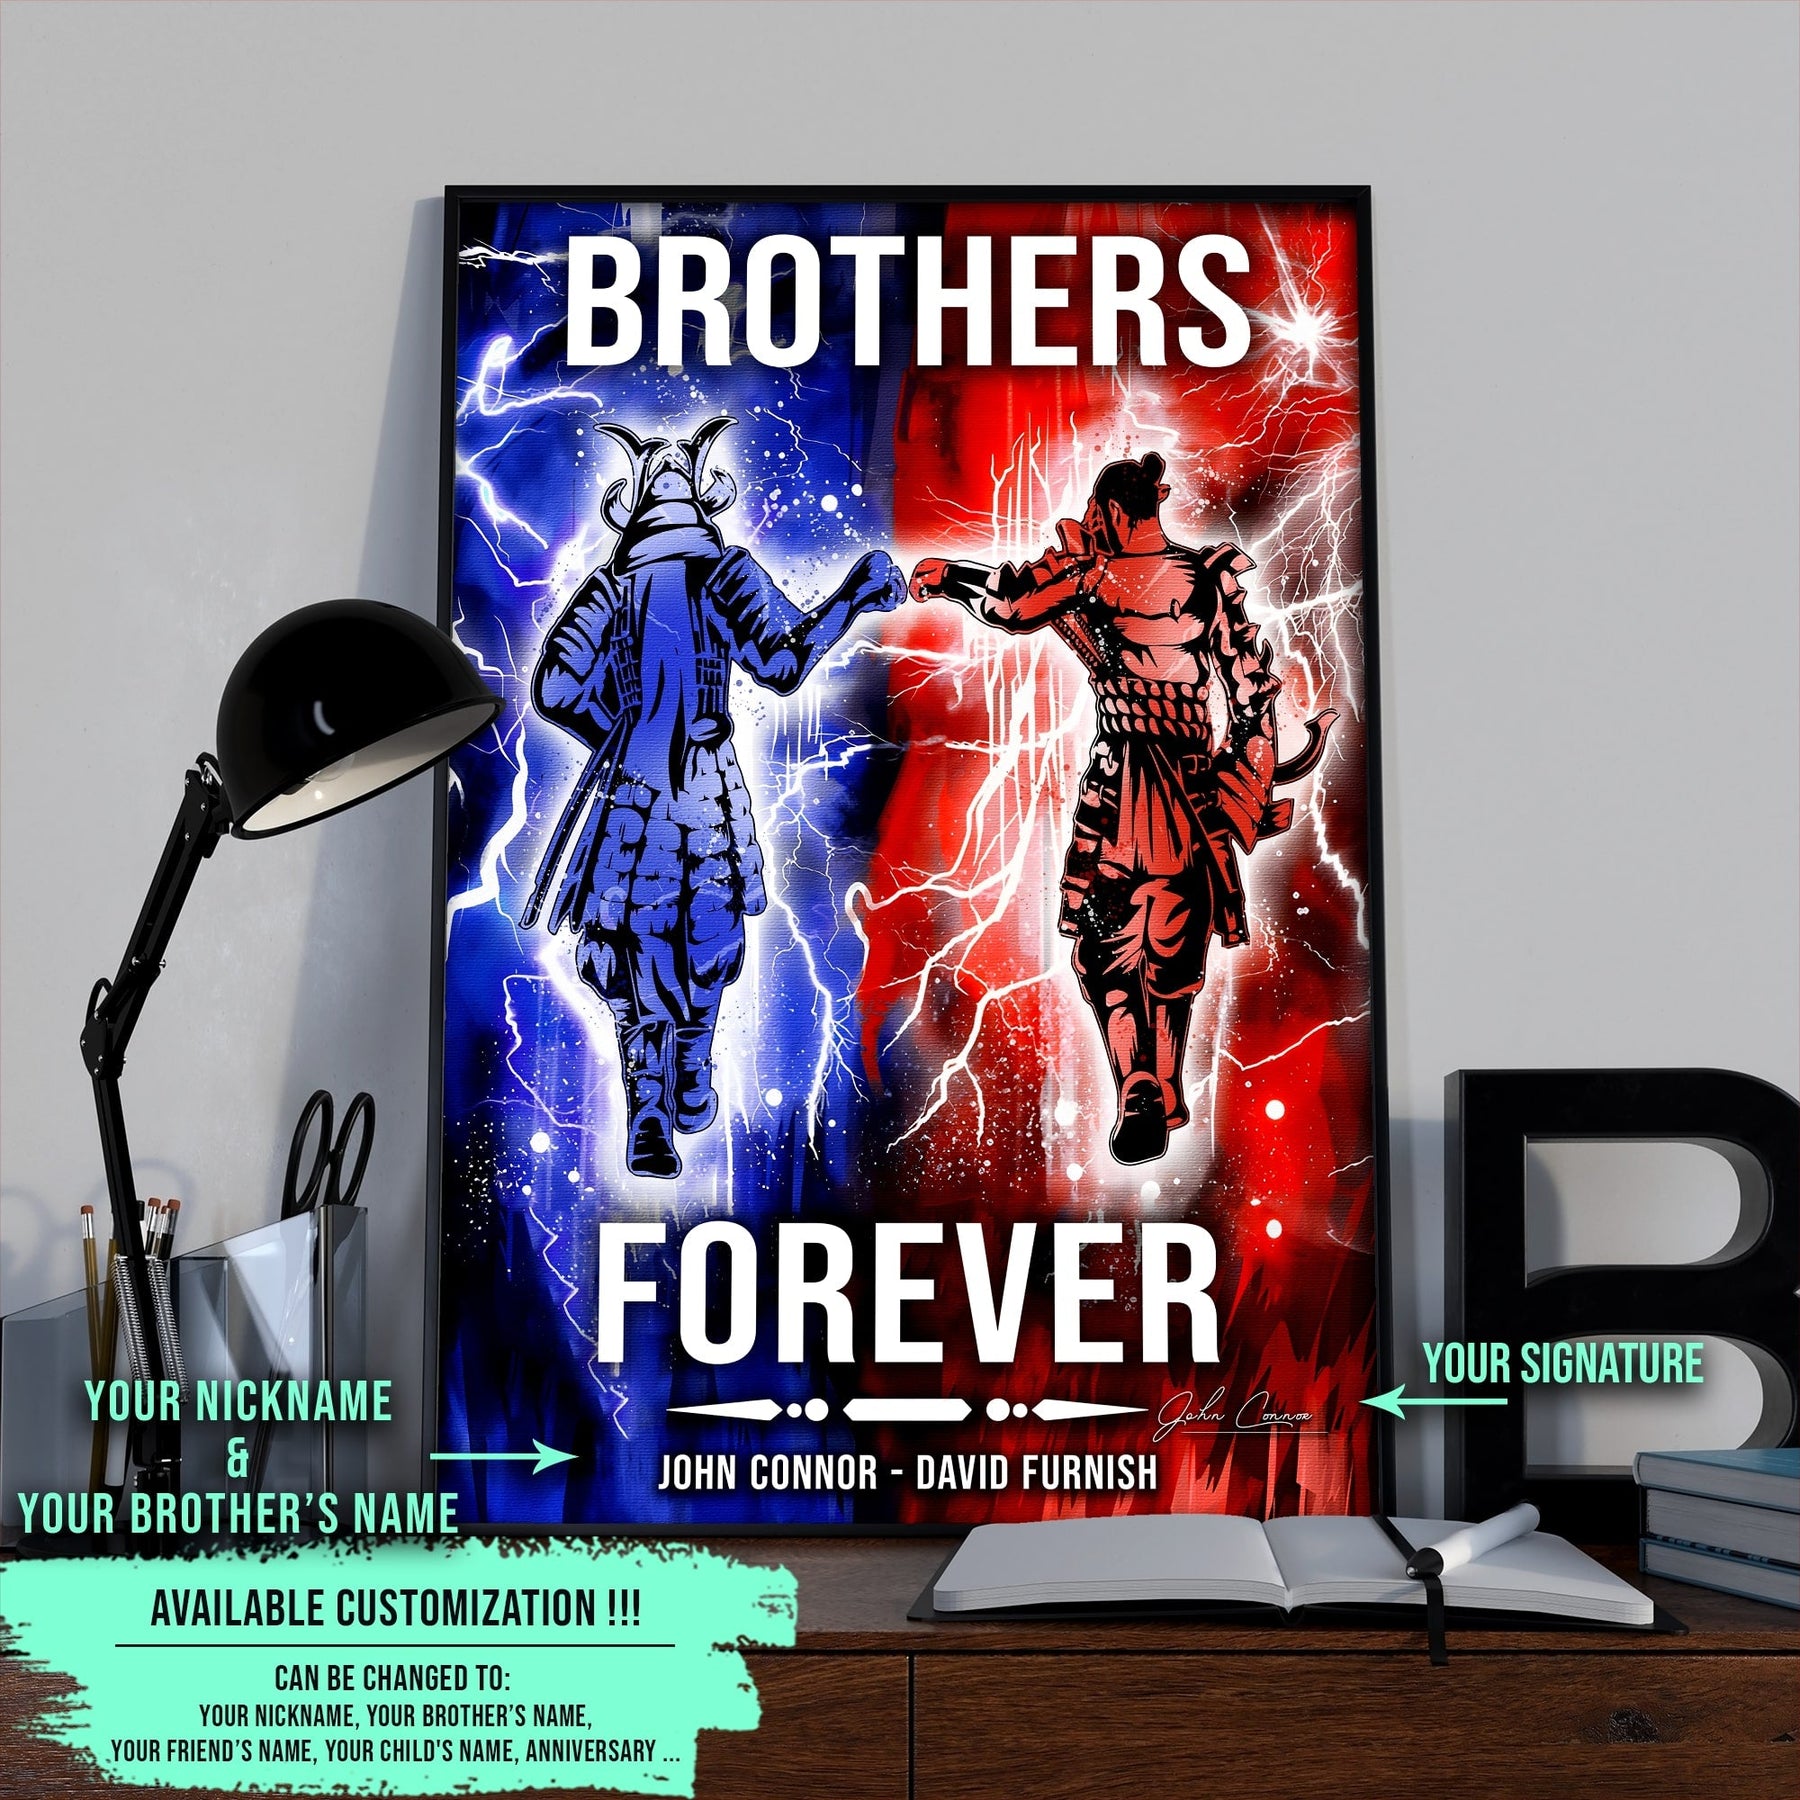 SA101 - Brothers Forever - Bushido - Katana - Ronin - Miyamoto Musashi - Vertical Poster - Vertical Canvas - Samurai Poster